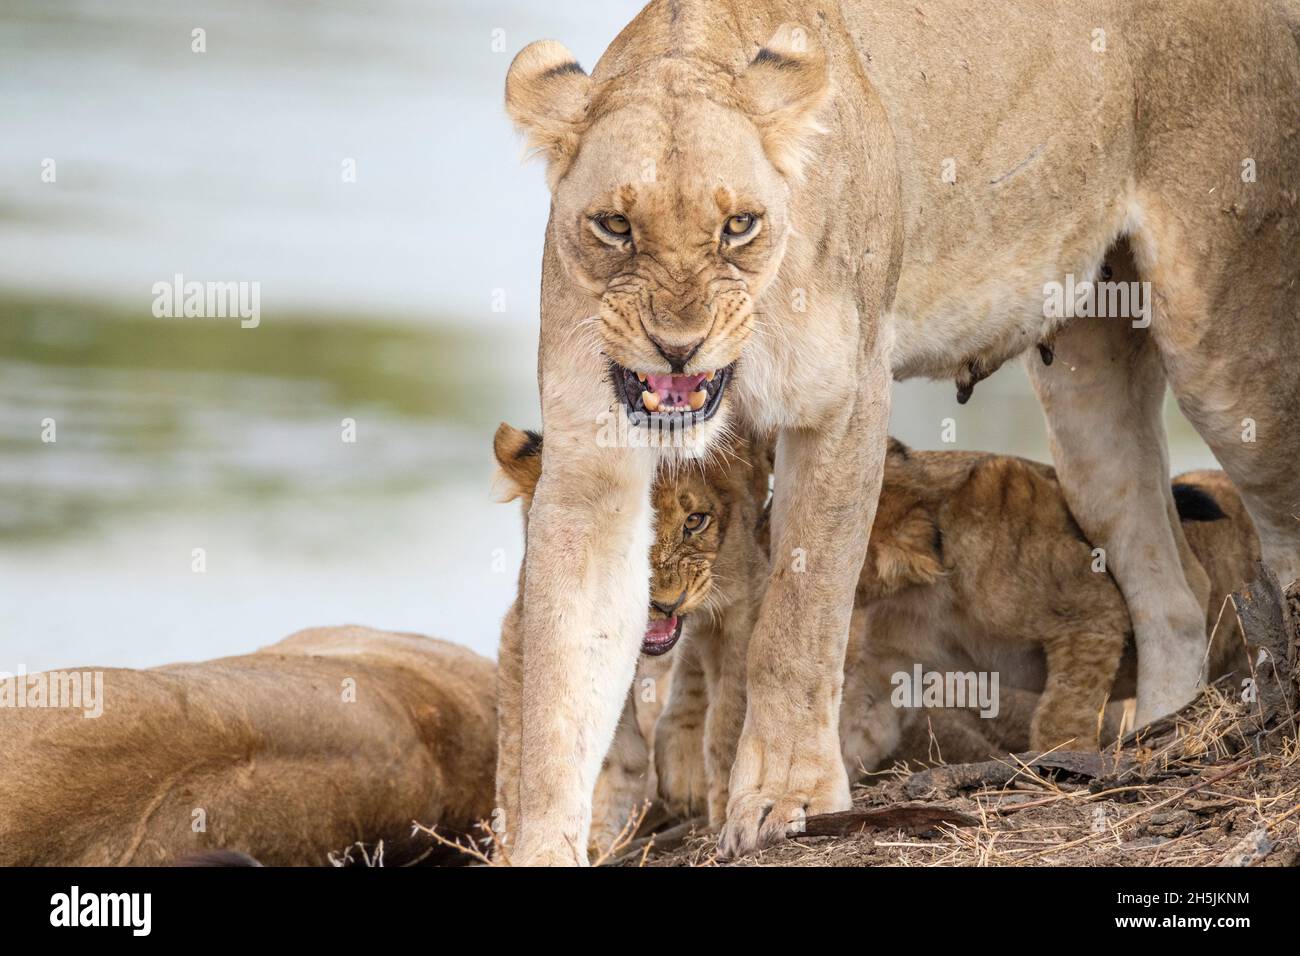 Löwenzahn, grumpiger Look (Panthera leo), Vorderansicht. Weiblicher Löwe wütend, Vorderansicht. South Luangwa National Park, Sambia Stockfoto